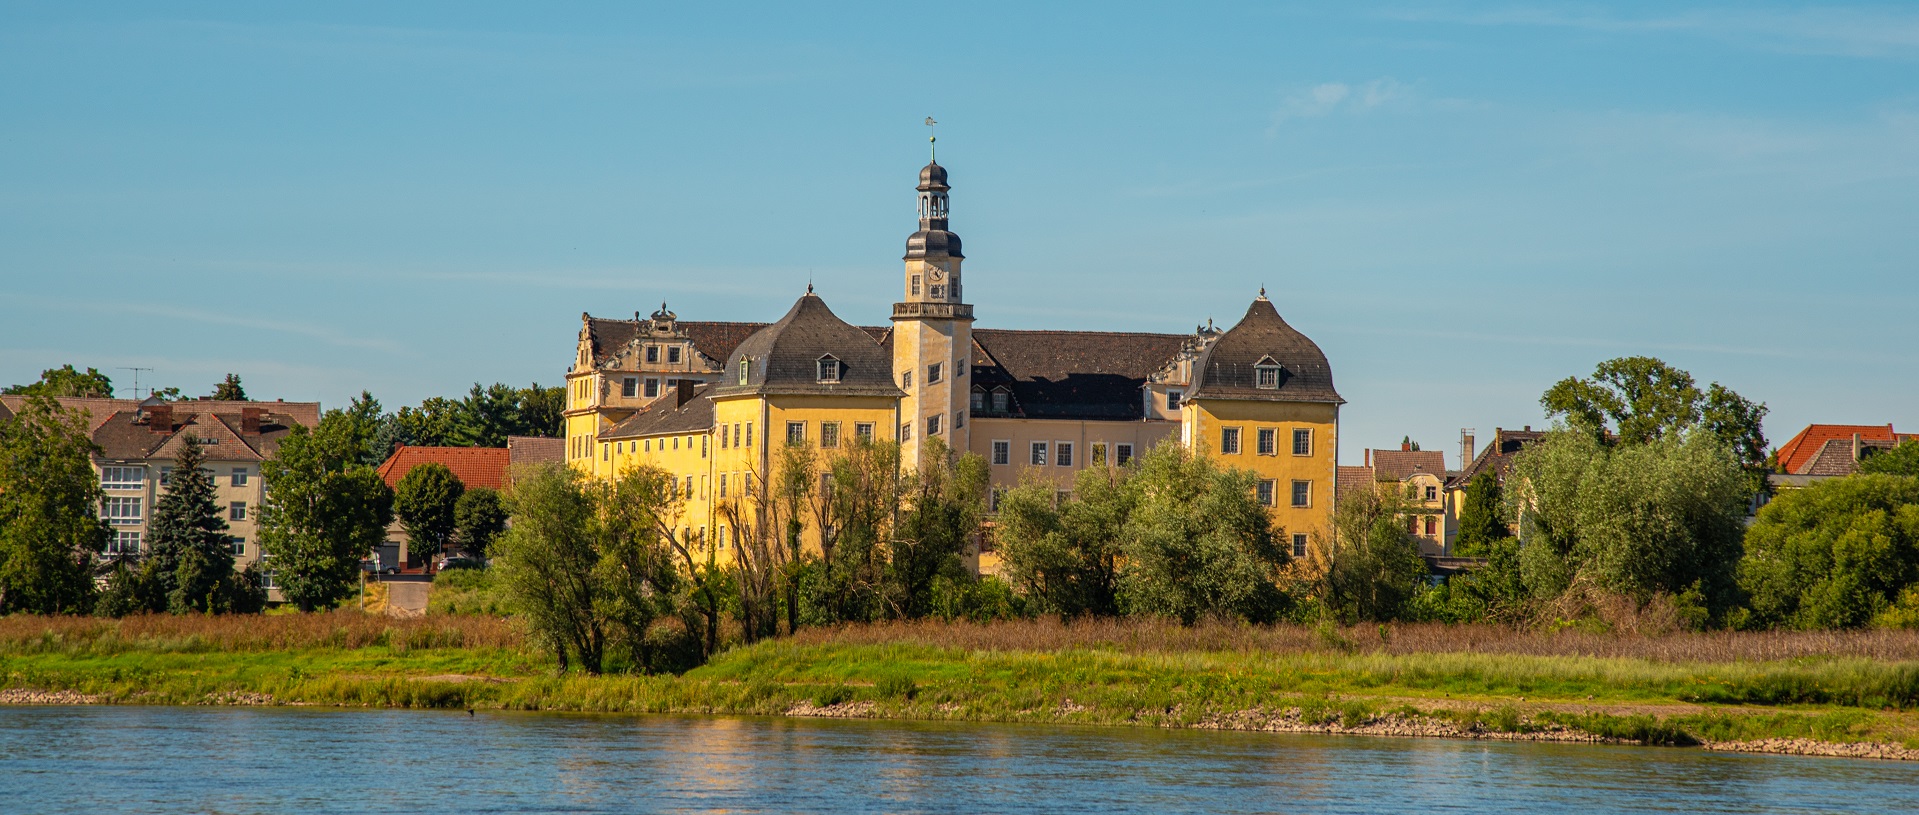 Schloss Coswig an der Elbe